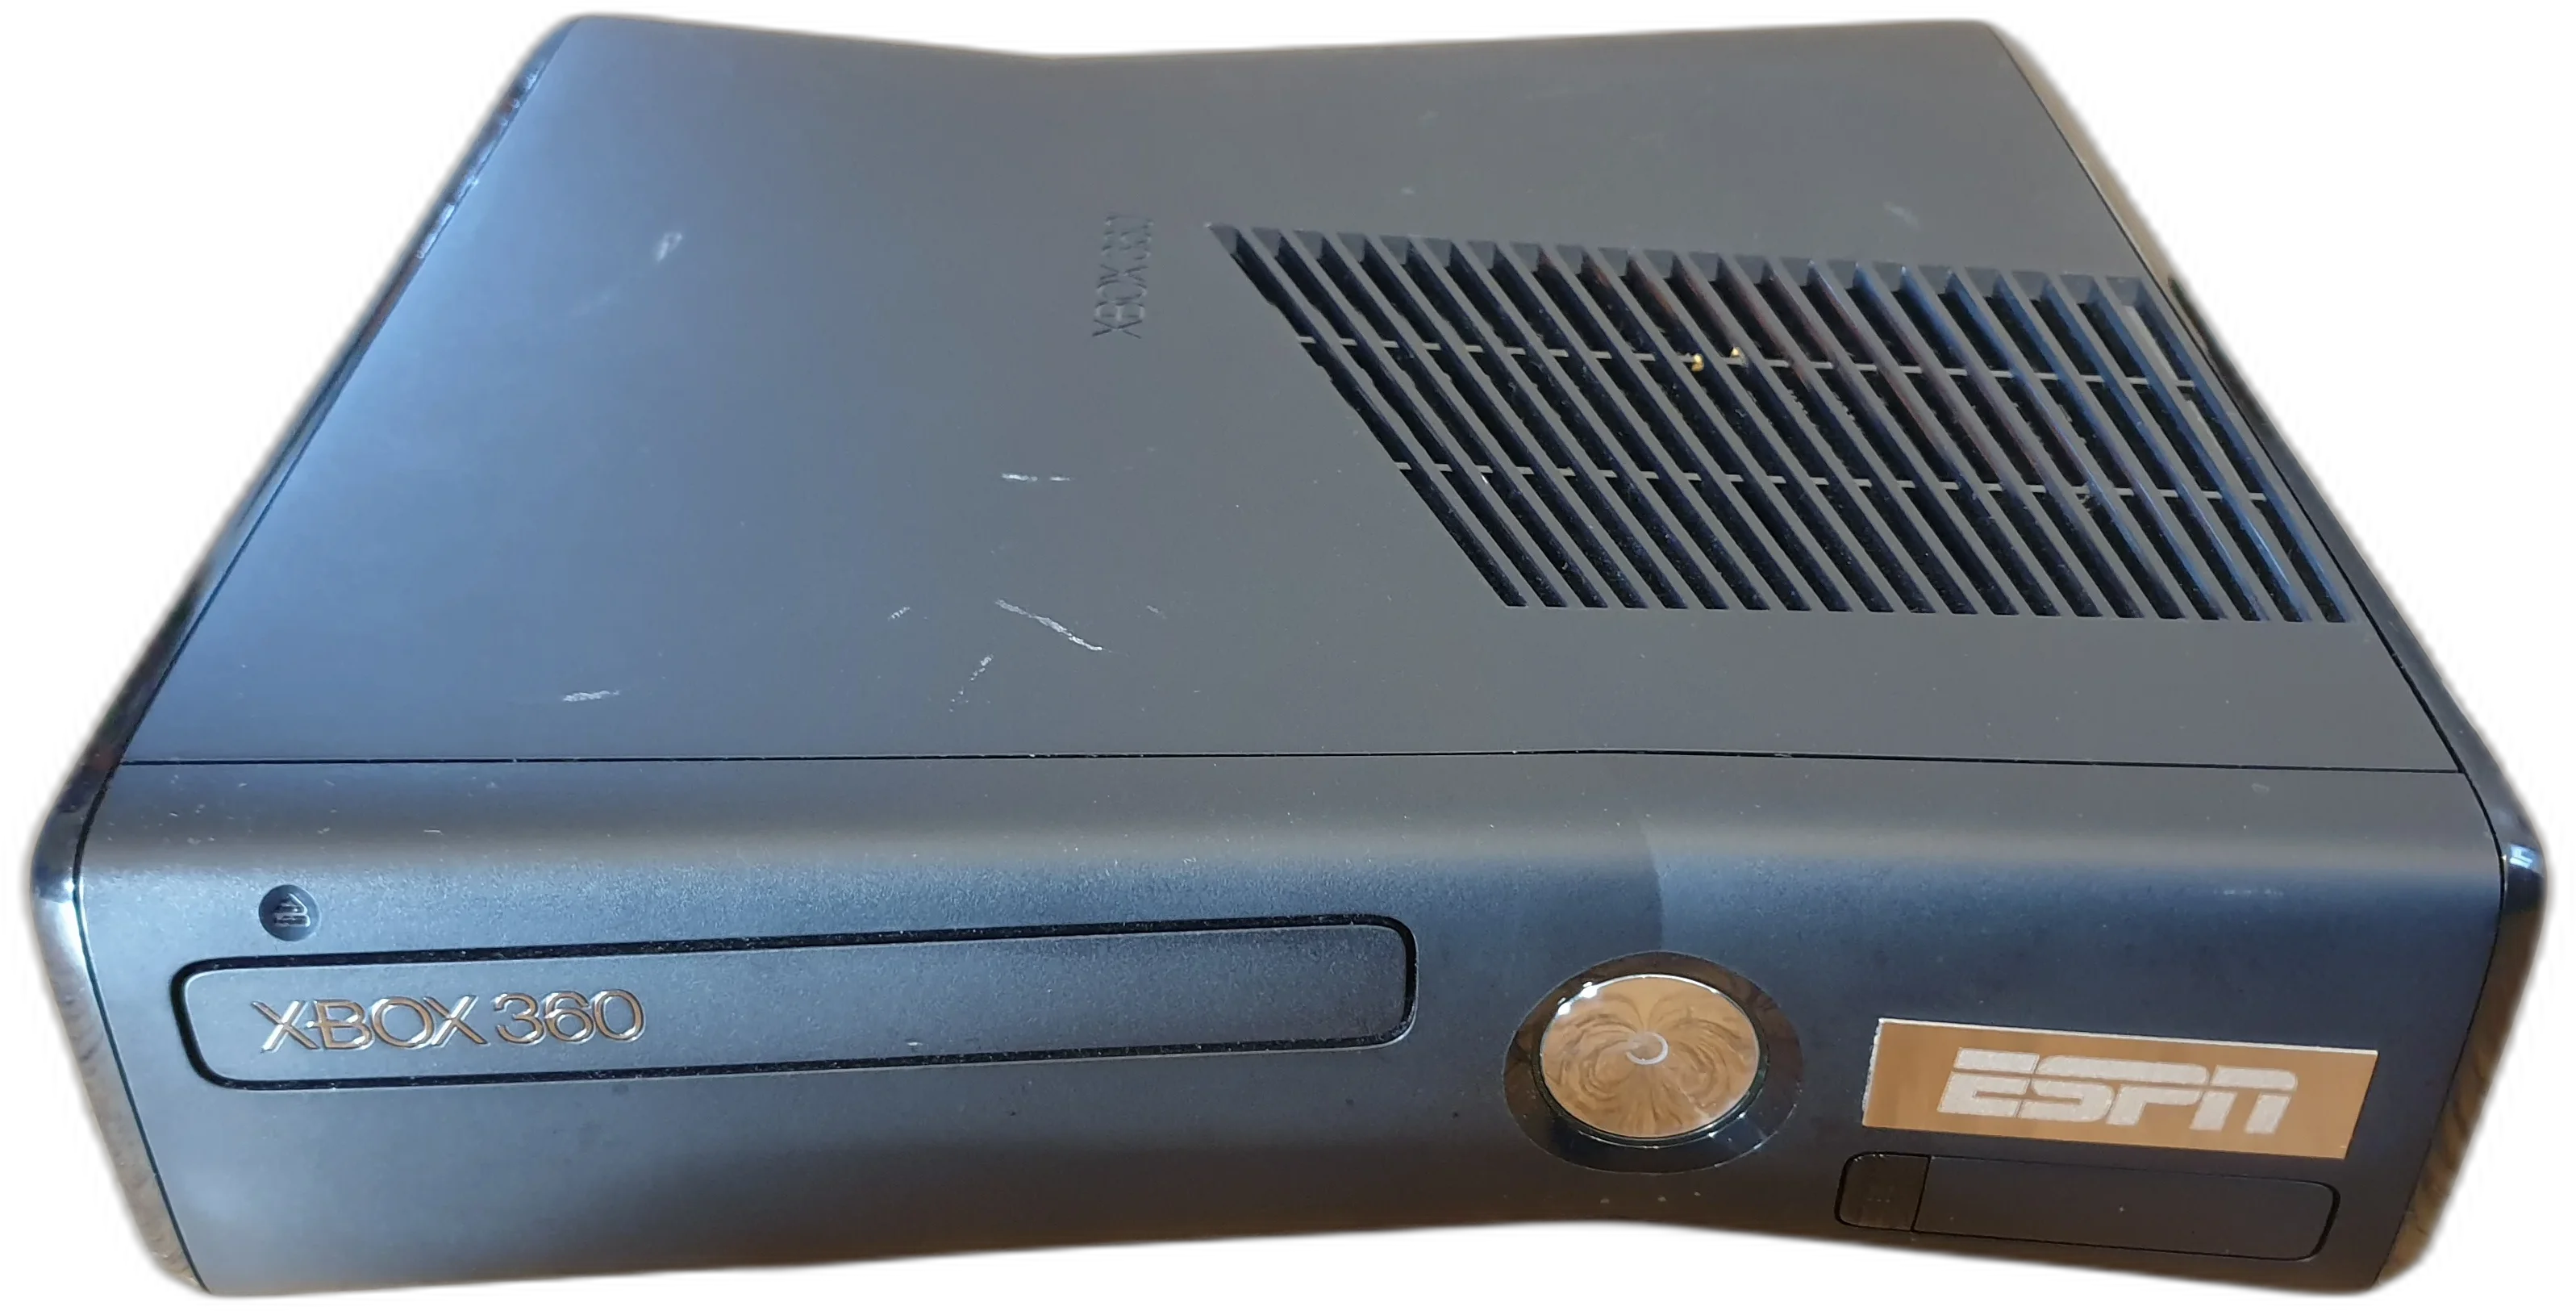  Microsoft Xbox 360 ESPN Black Console